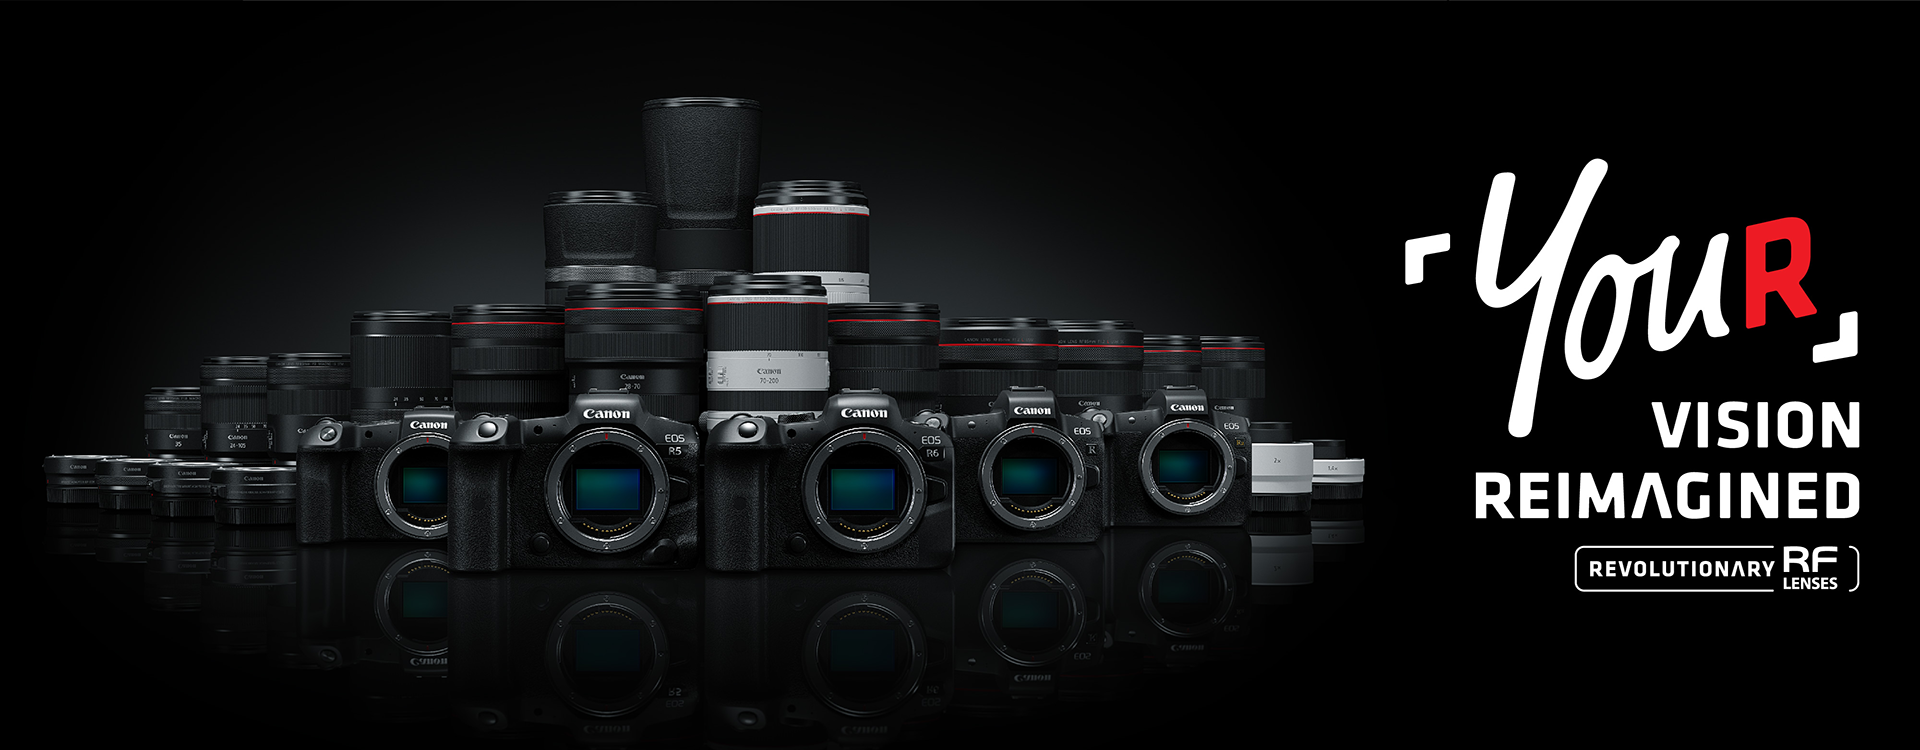 Canon eos60d - Die TOP Auswahl unter der Menge an verglichenenCanon eos60d!